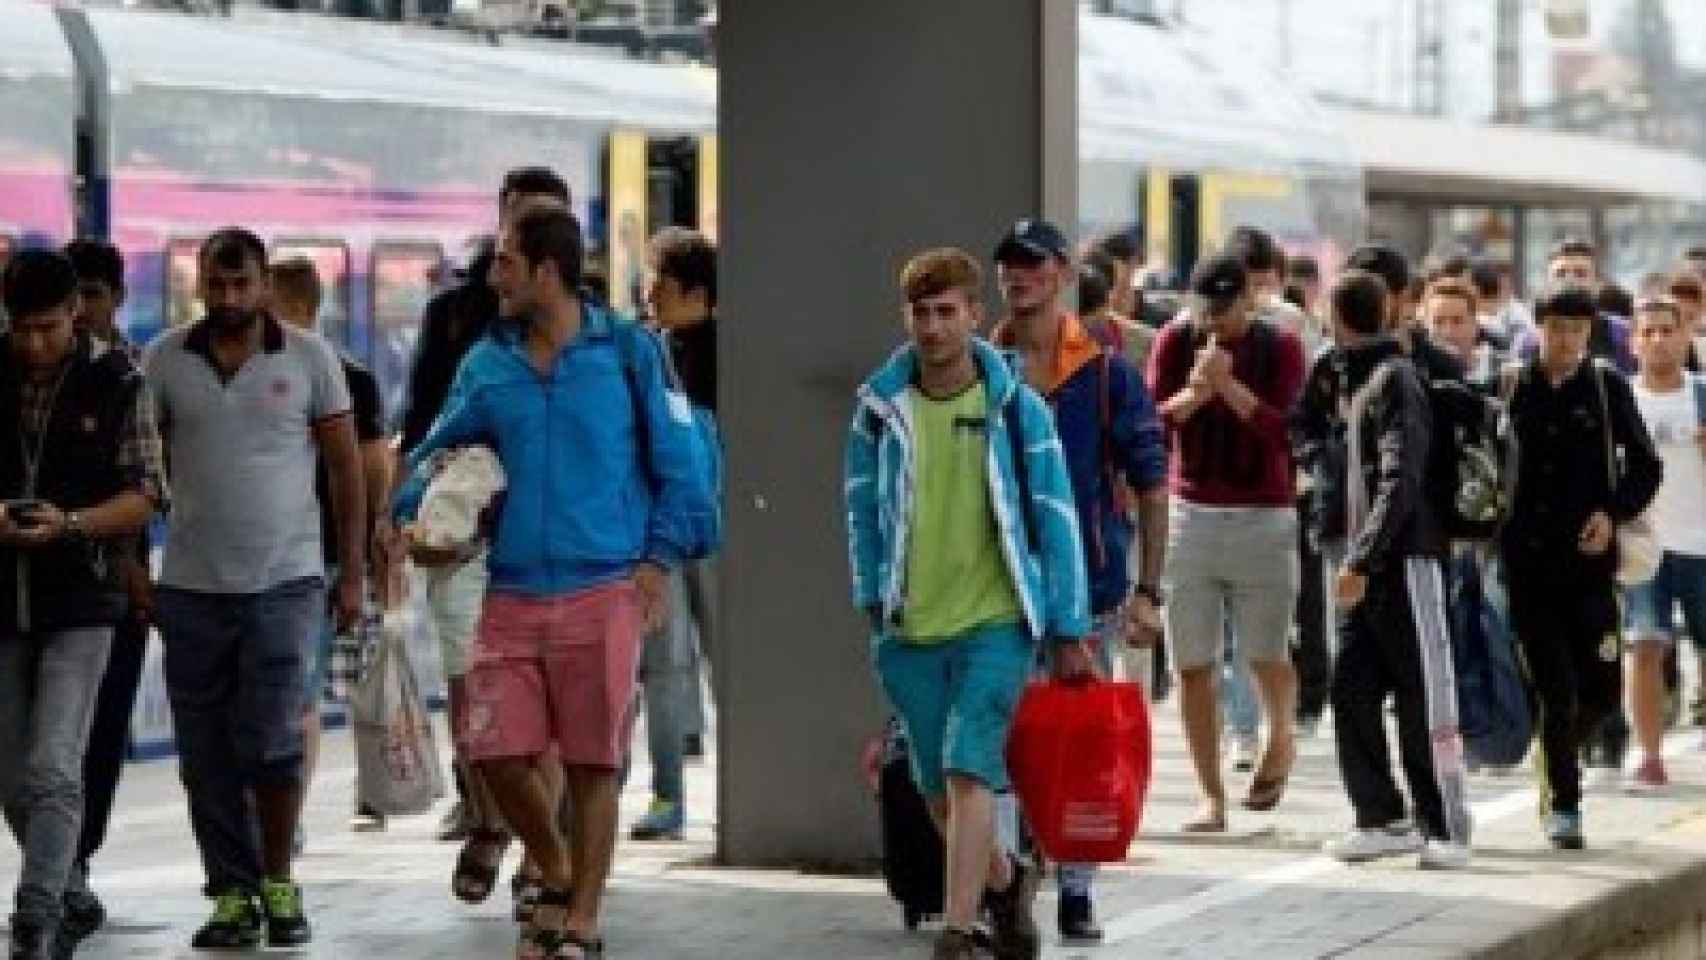 Refugiados llegan a la estación de tren.